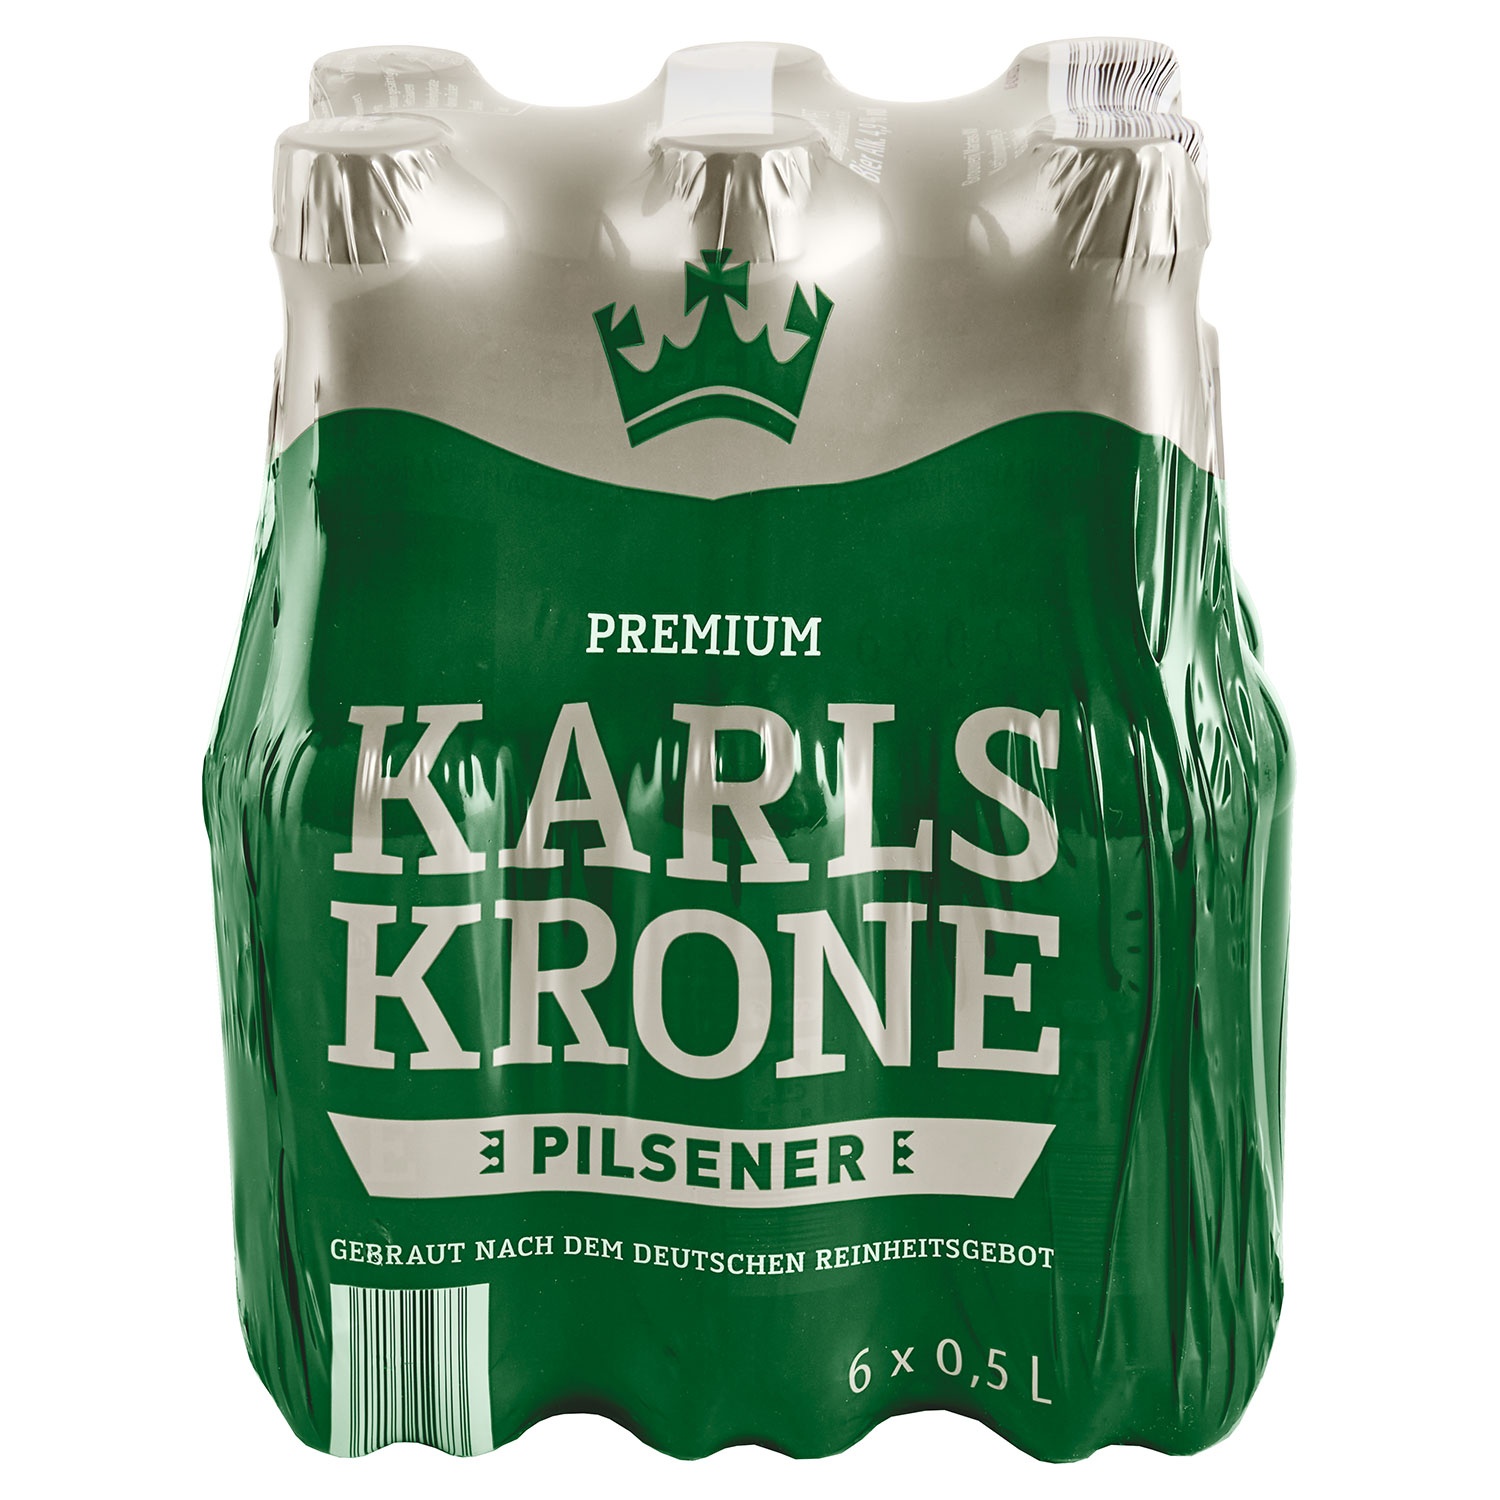 KARLSKRONE Premium Pilsener 3 l, 6er-Pack